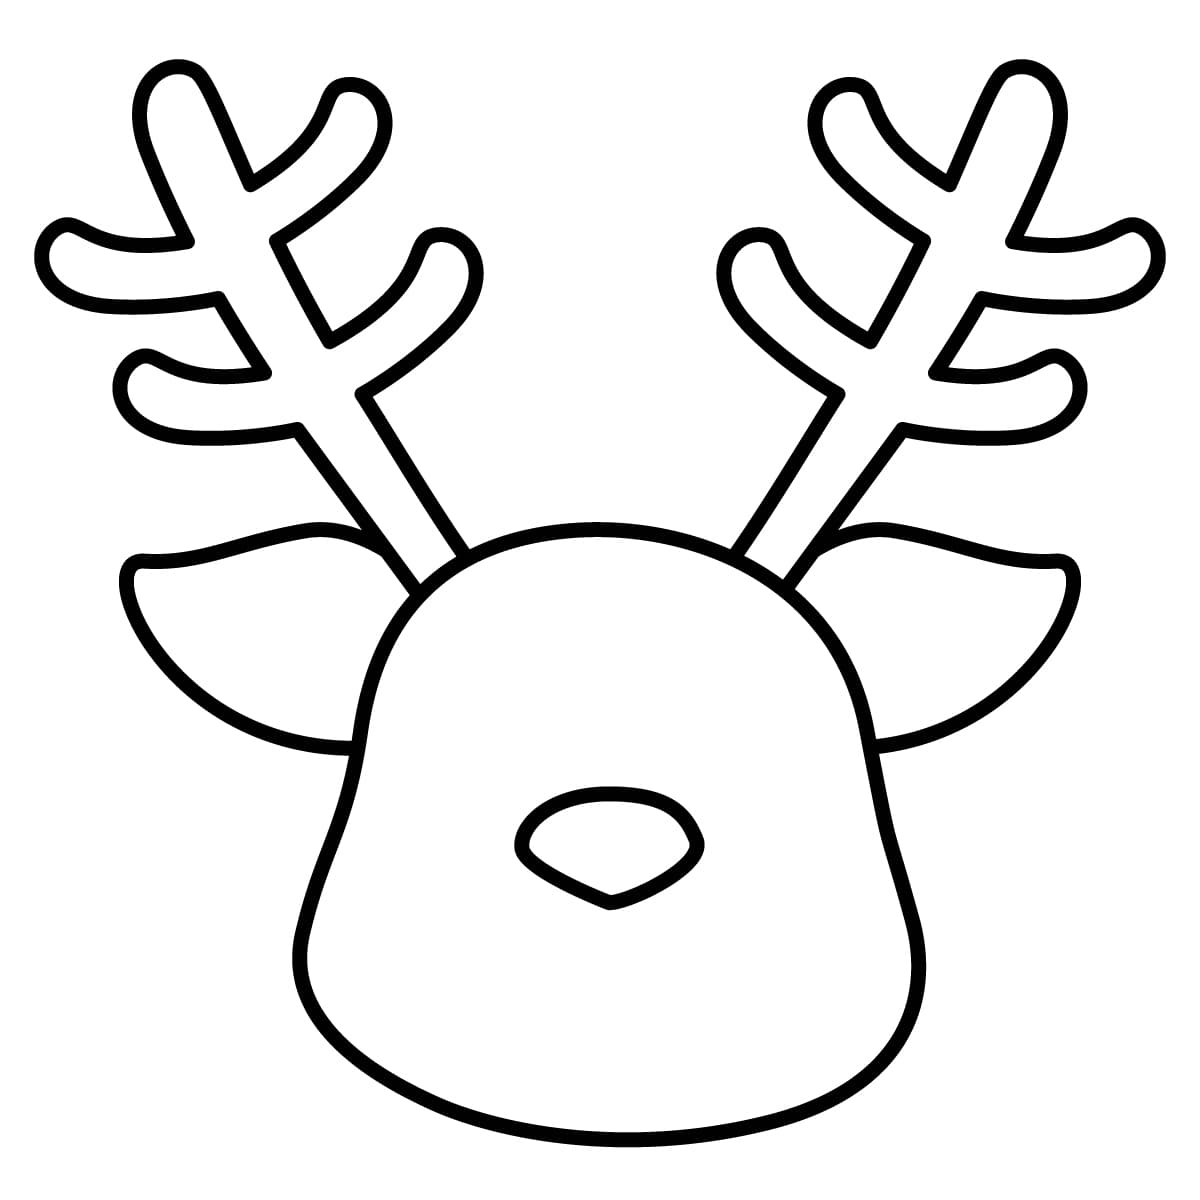 Dibujo de reno navideño para colorear e imprimir - Dibujos y colores